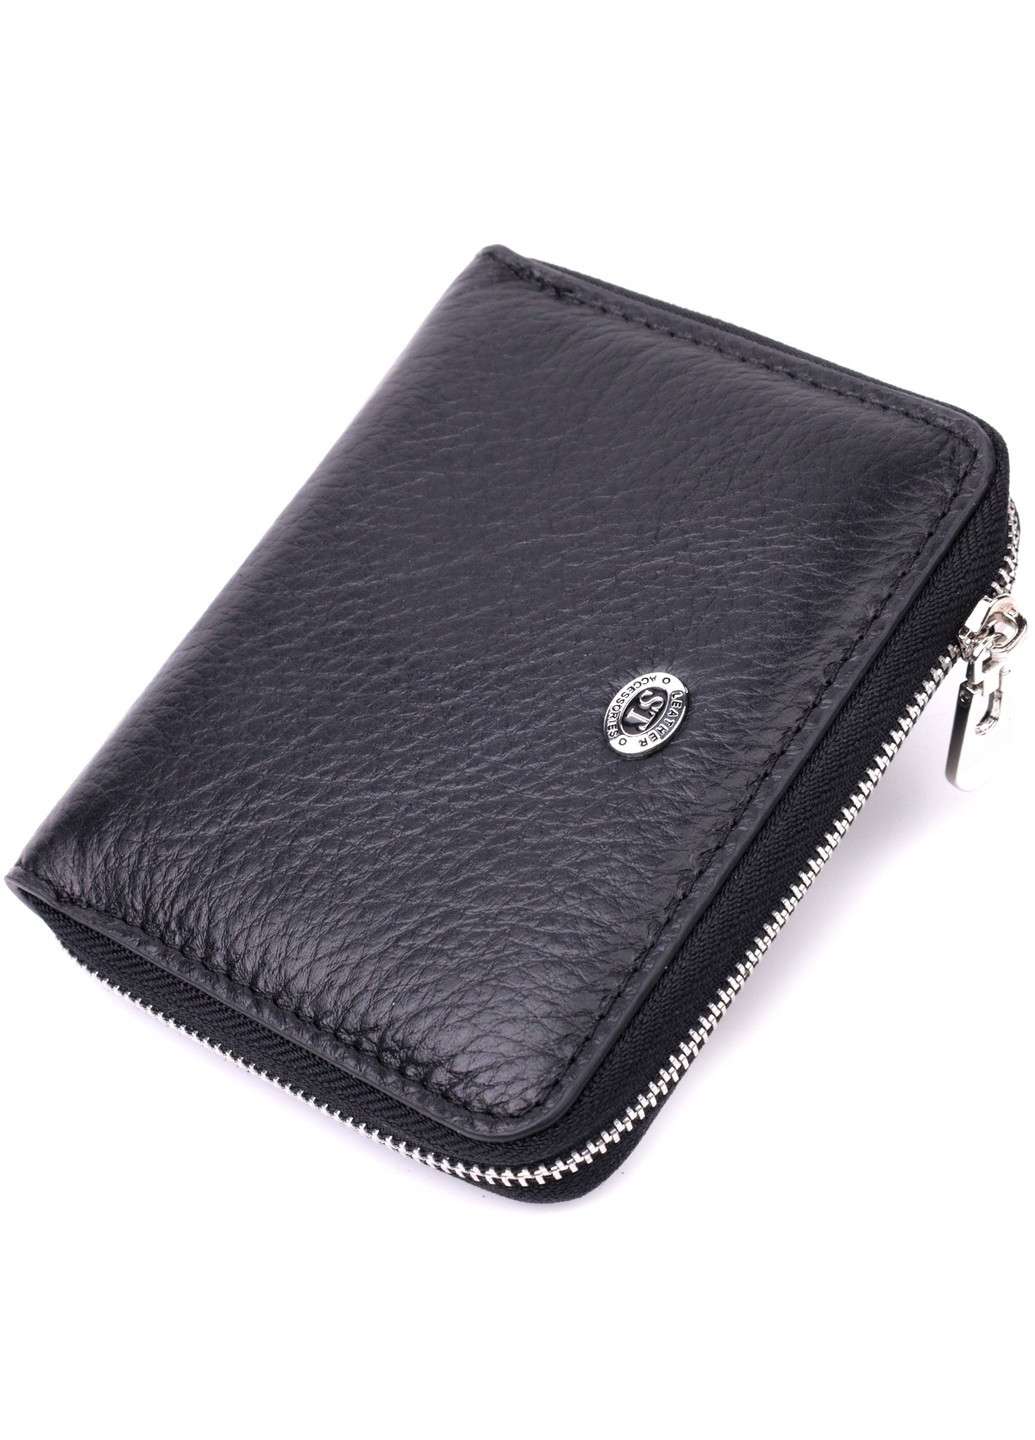 Жіночий шкіряний гаманець на блискавці з металевим логотипом виробника 19483 Чорний st leather (277980493)